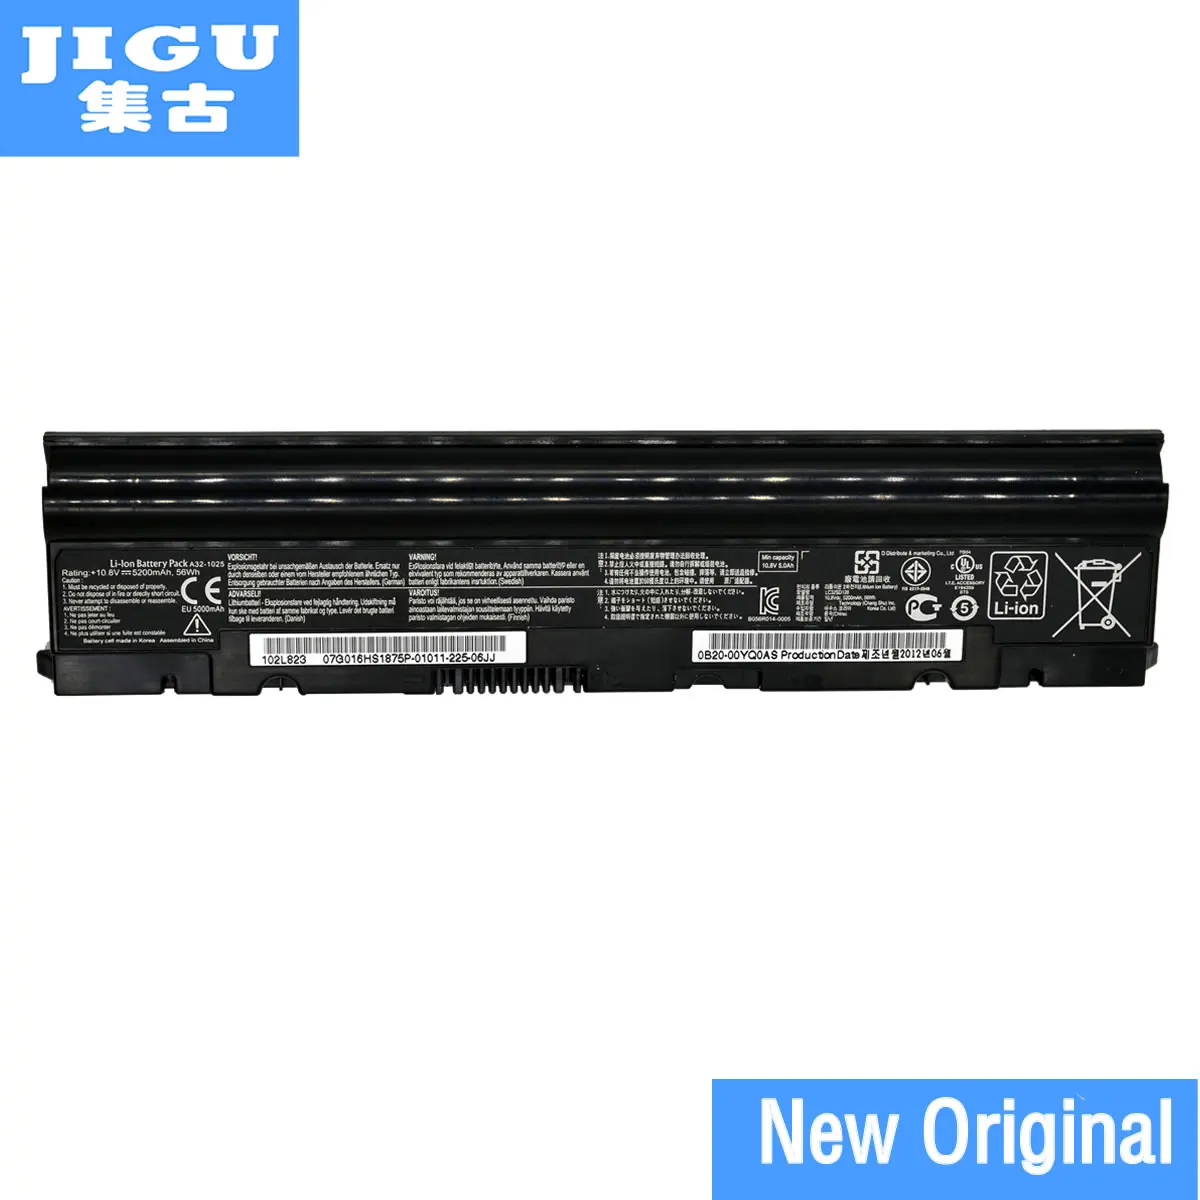 Фото JIGU A31-1025 1025b 1025c A32-1025 Original laptop Battery For Asus 1025 1025C 1025CE 1225 1225B 1225C R052 | Компьютеры и офис